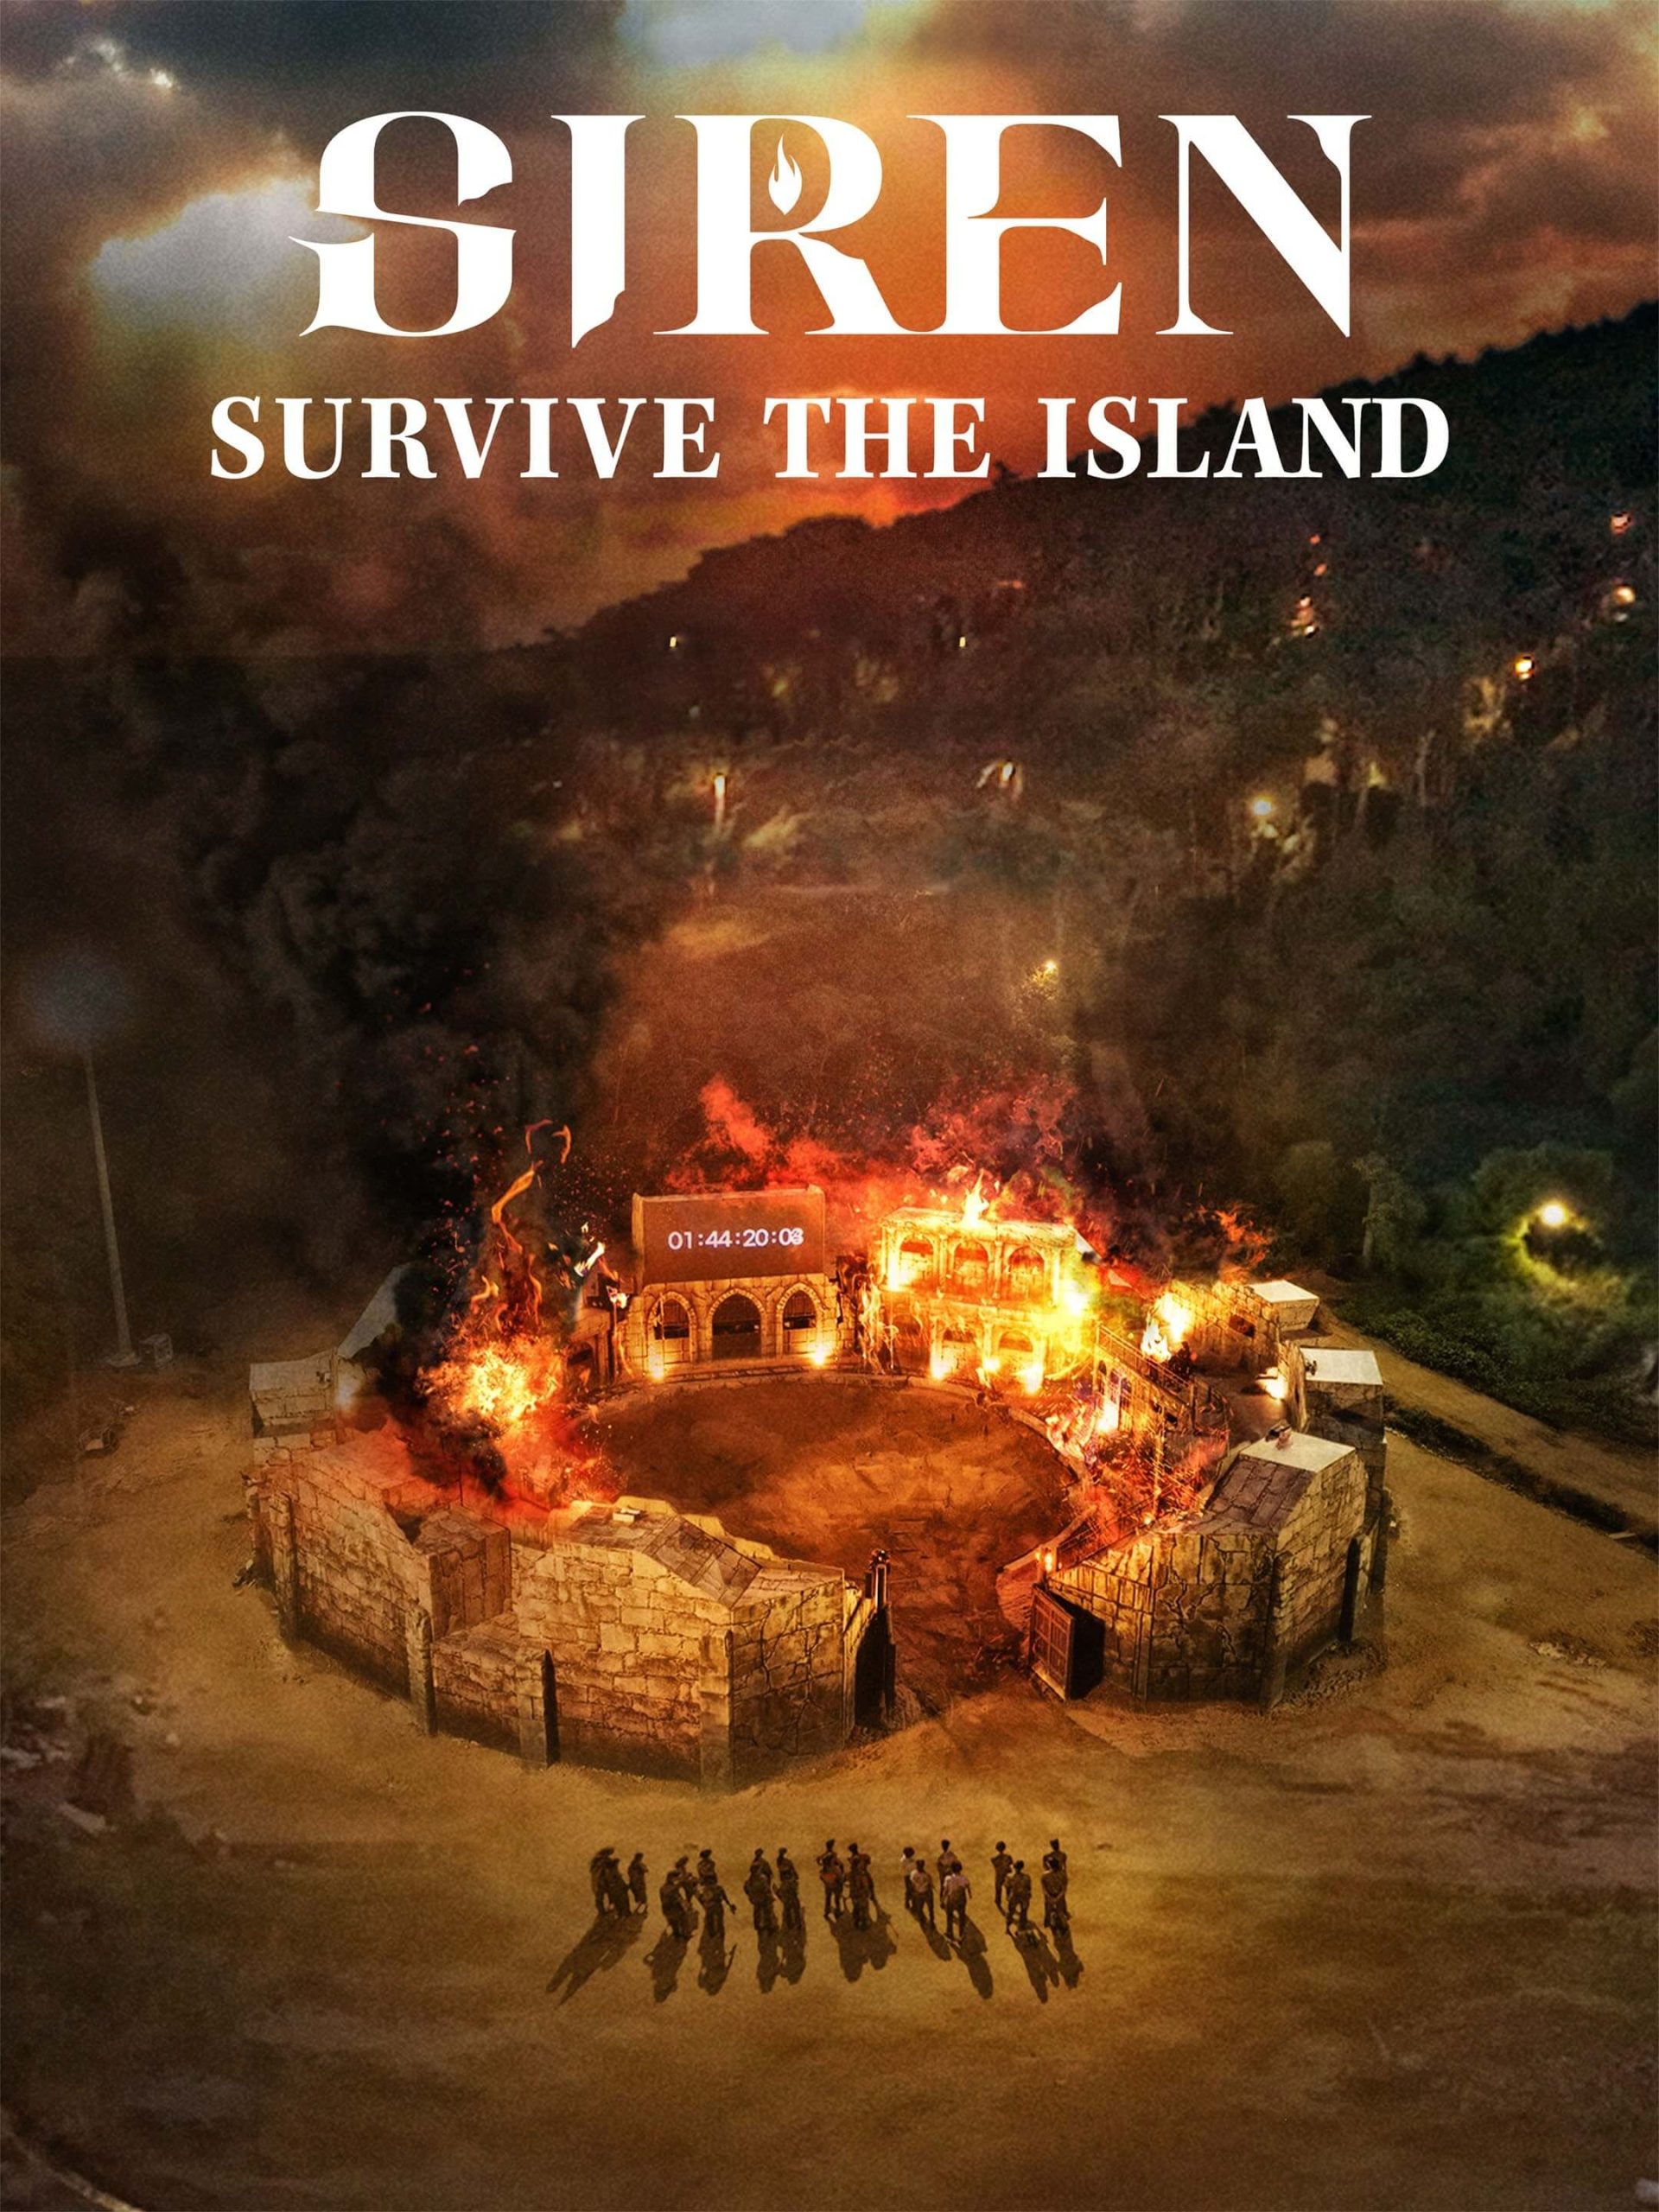 سیرن: در جزیره زنده بمانید (Siren: Survive the Island)